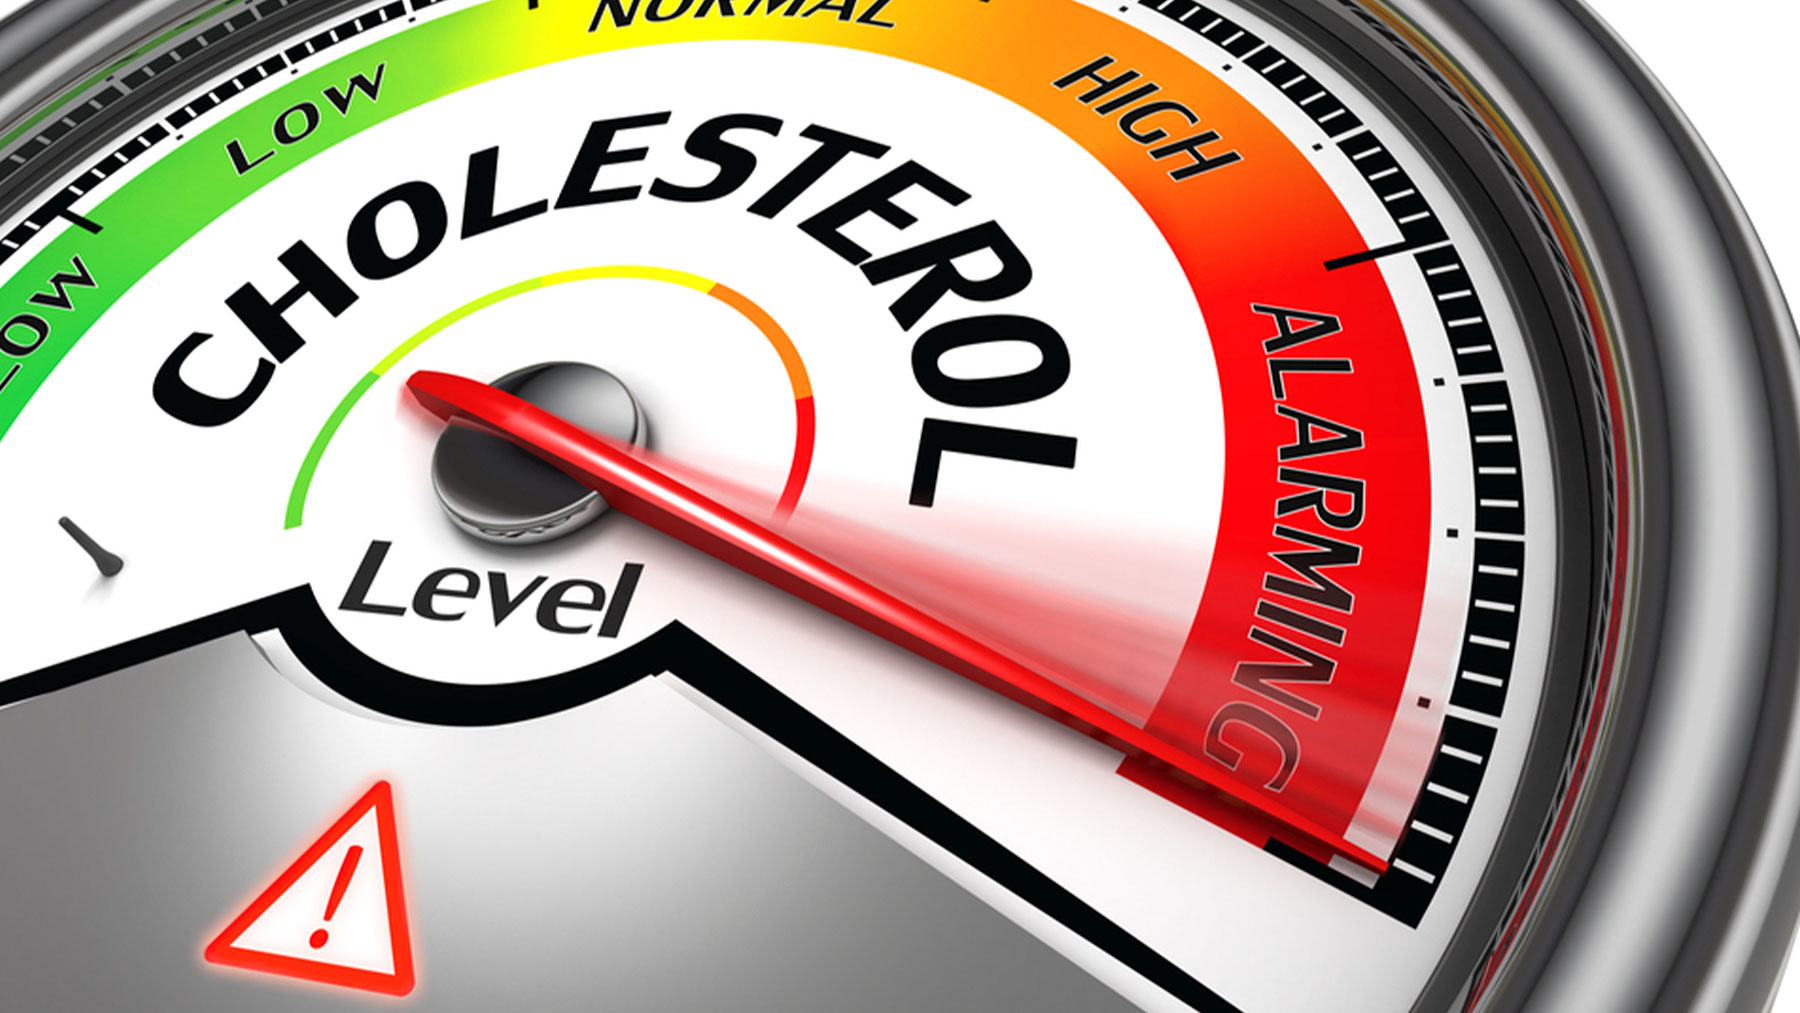 El colesterol elevado es uno de los factores de riesgo cardiovascular.